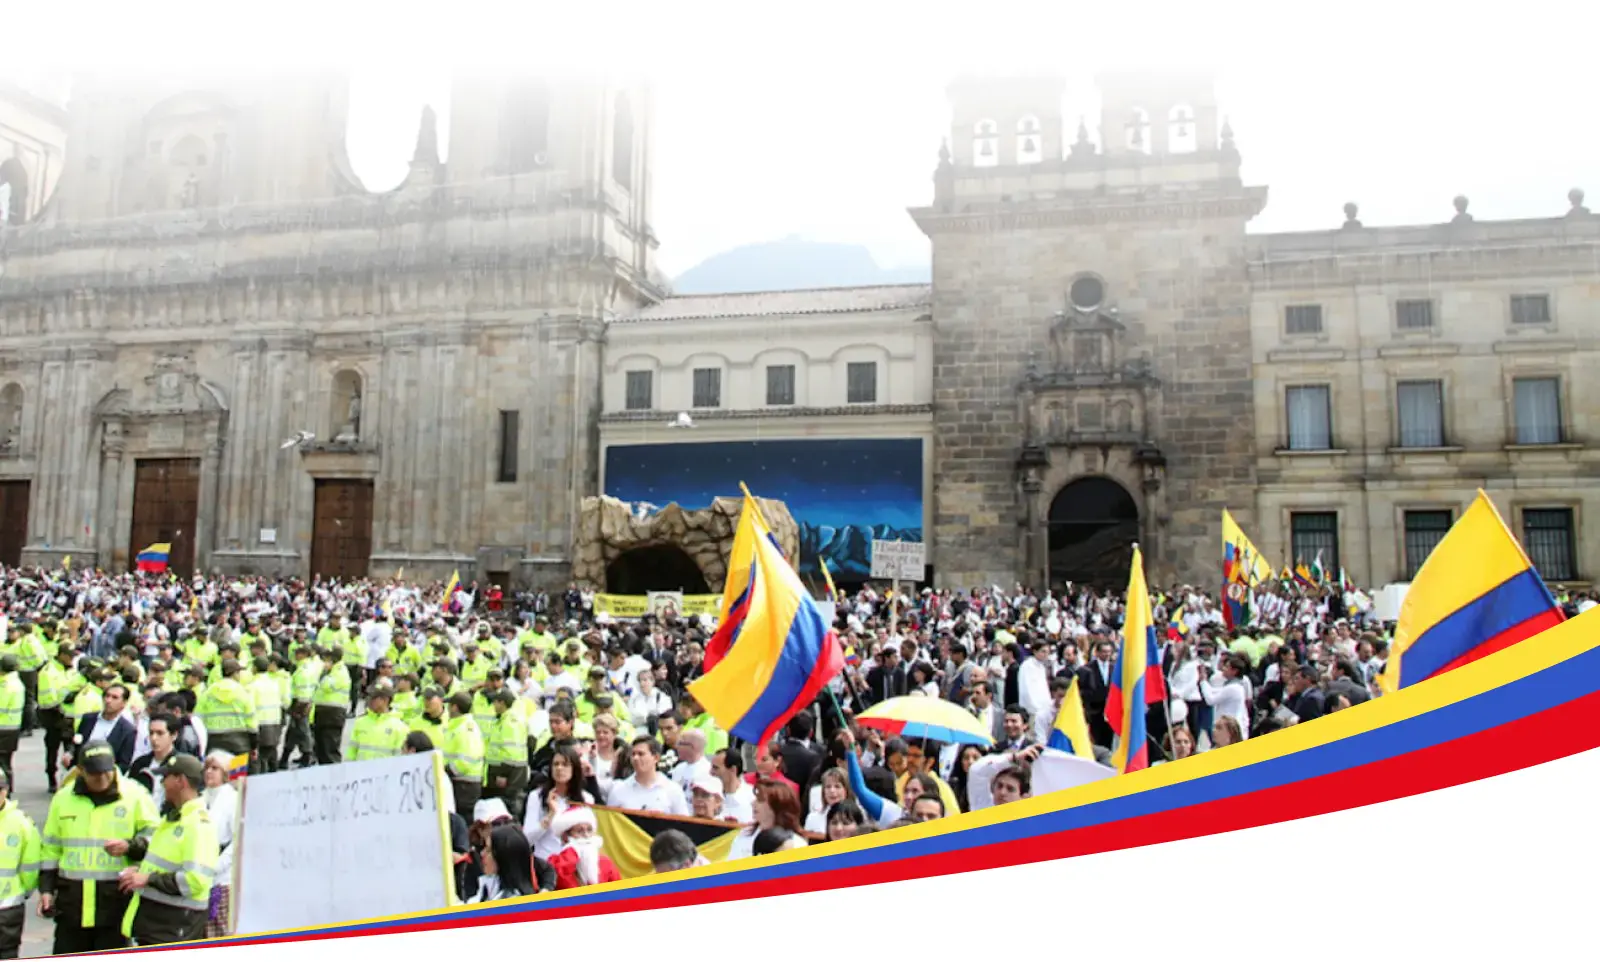 Eine große Ansammlung von Menschen in Kolumbien, von denen viele die kolumbianische Flagge tragen, vor einem prominenten Bundesgebäude, möglicherweise einer Kathedrale oder einem Regierungsgebäude, mit Polizeibeamten im Vordergrund.